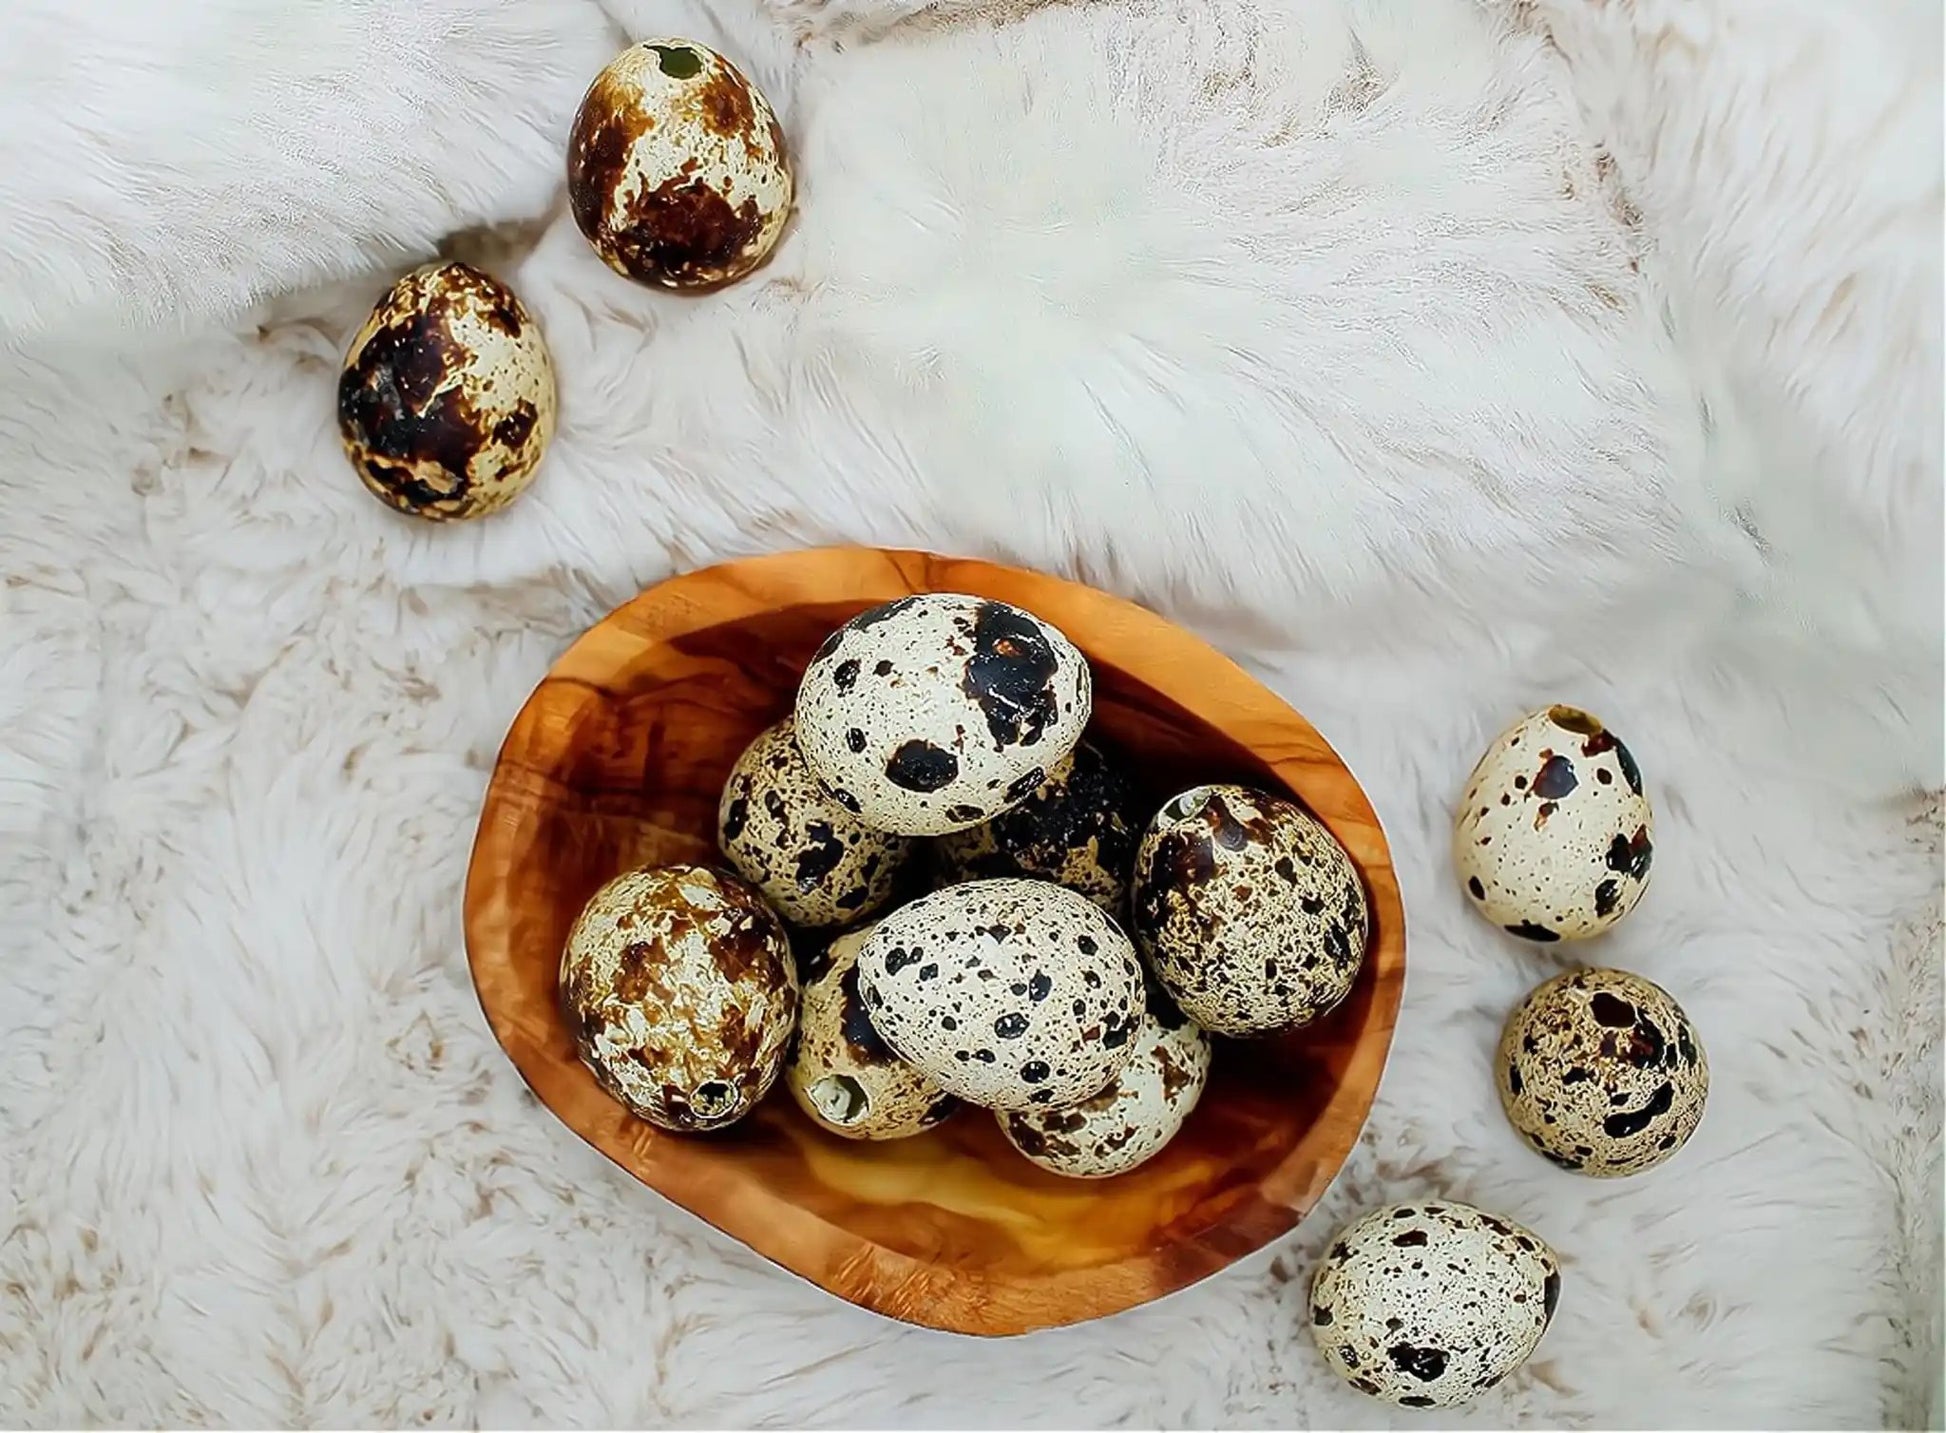 Osterdeko Holz - natürliche Olivenholzschale mit Eiern mit echten Wachteleiern oder Dekoeiern